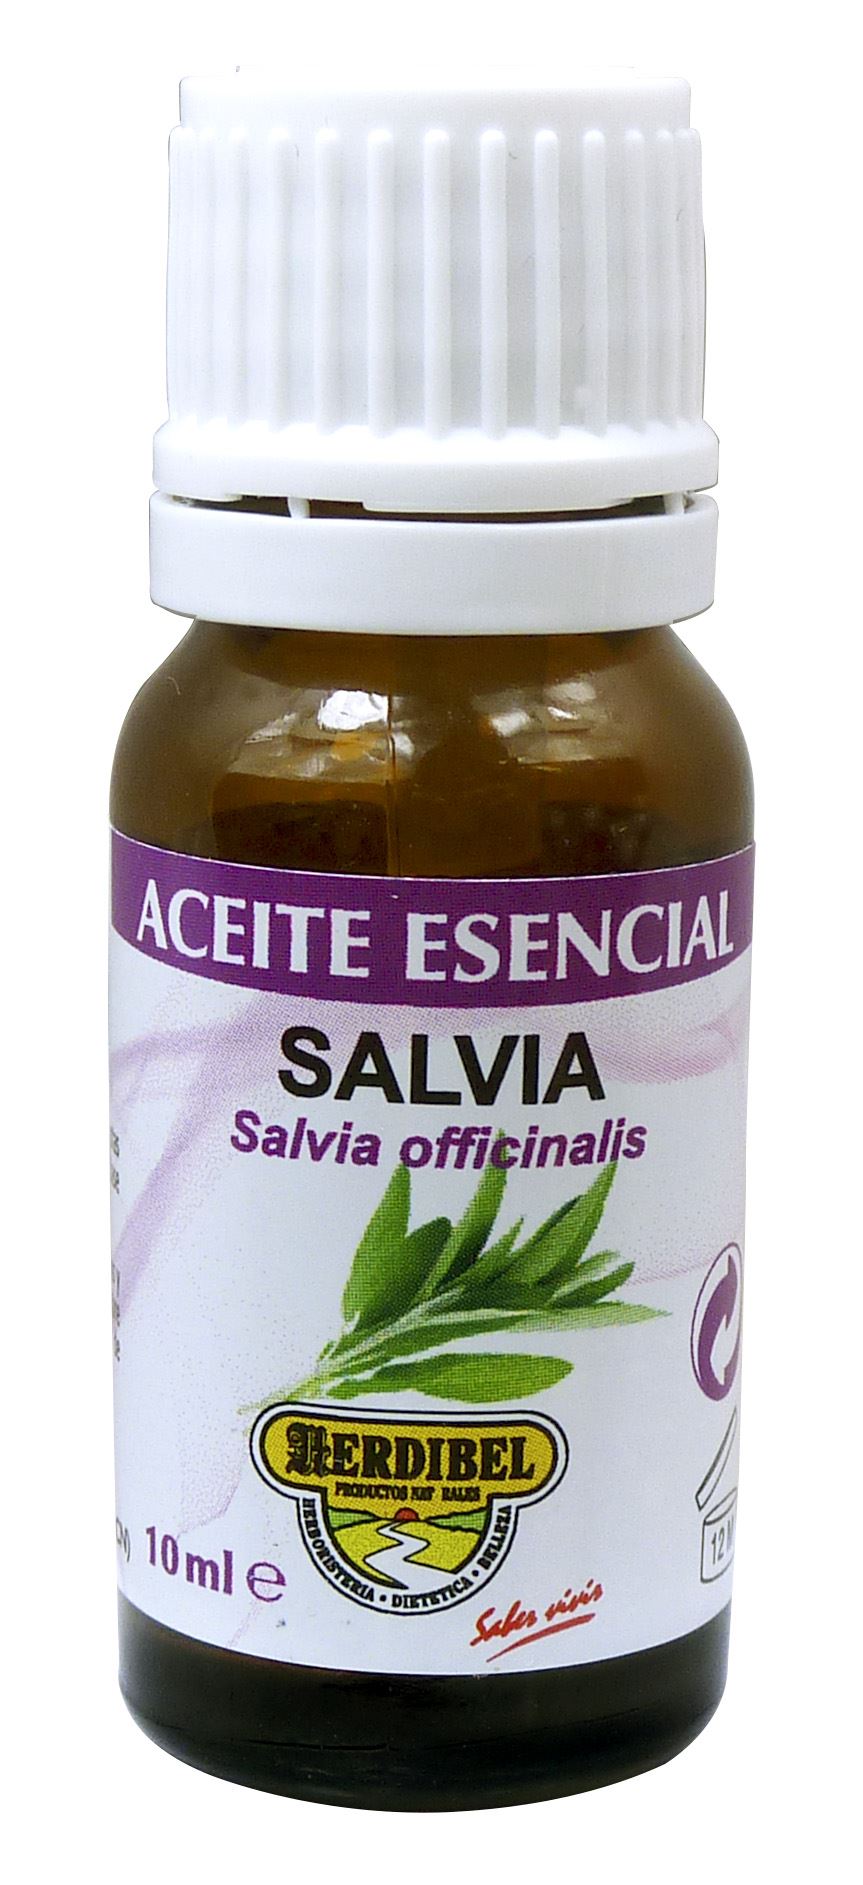 ACEITE ESENCIAL SALVIA 10 ml. (solo uso externo)